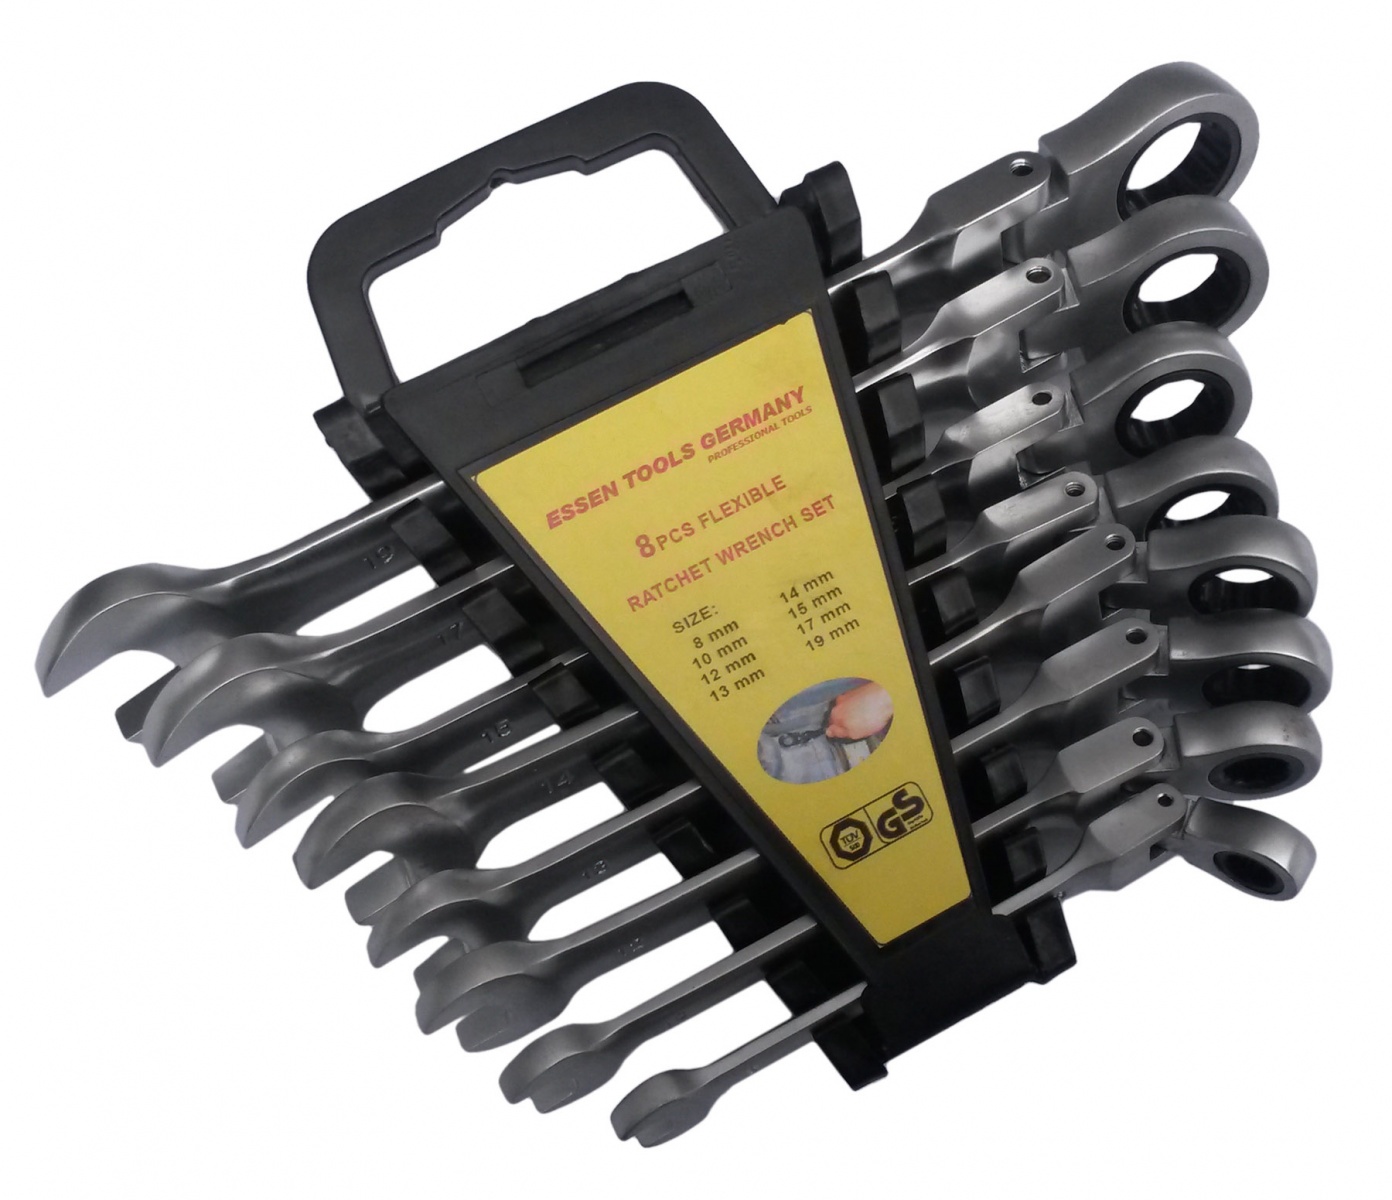 8 pc Flexible Ratchet Wrench Set 8-19 mm. (ER-1208S)